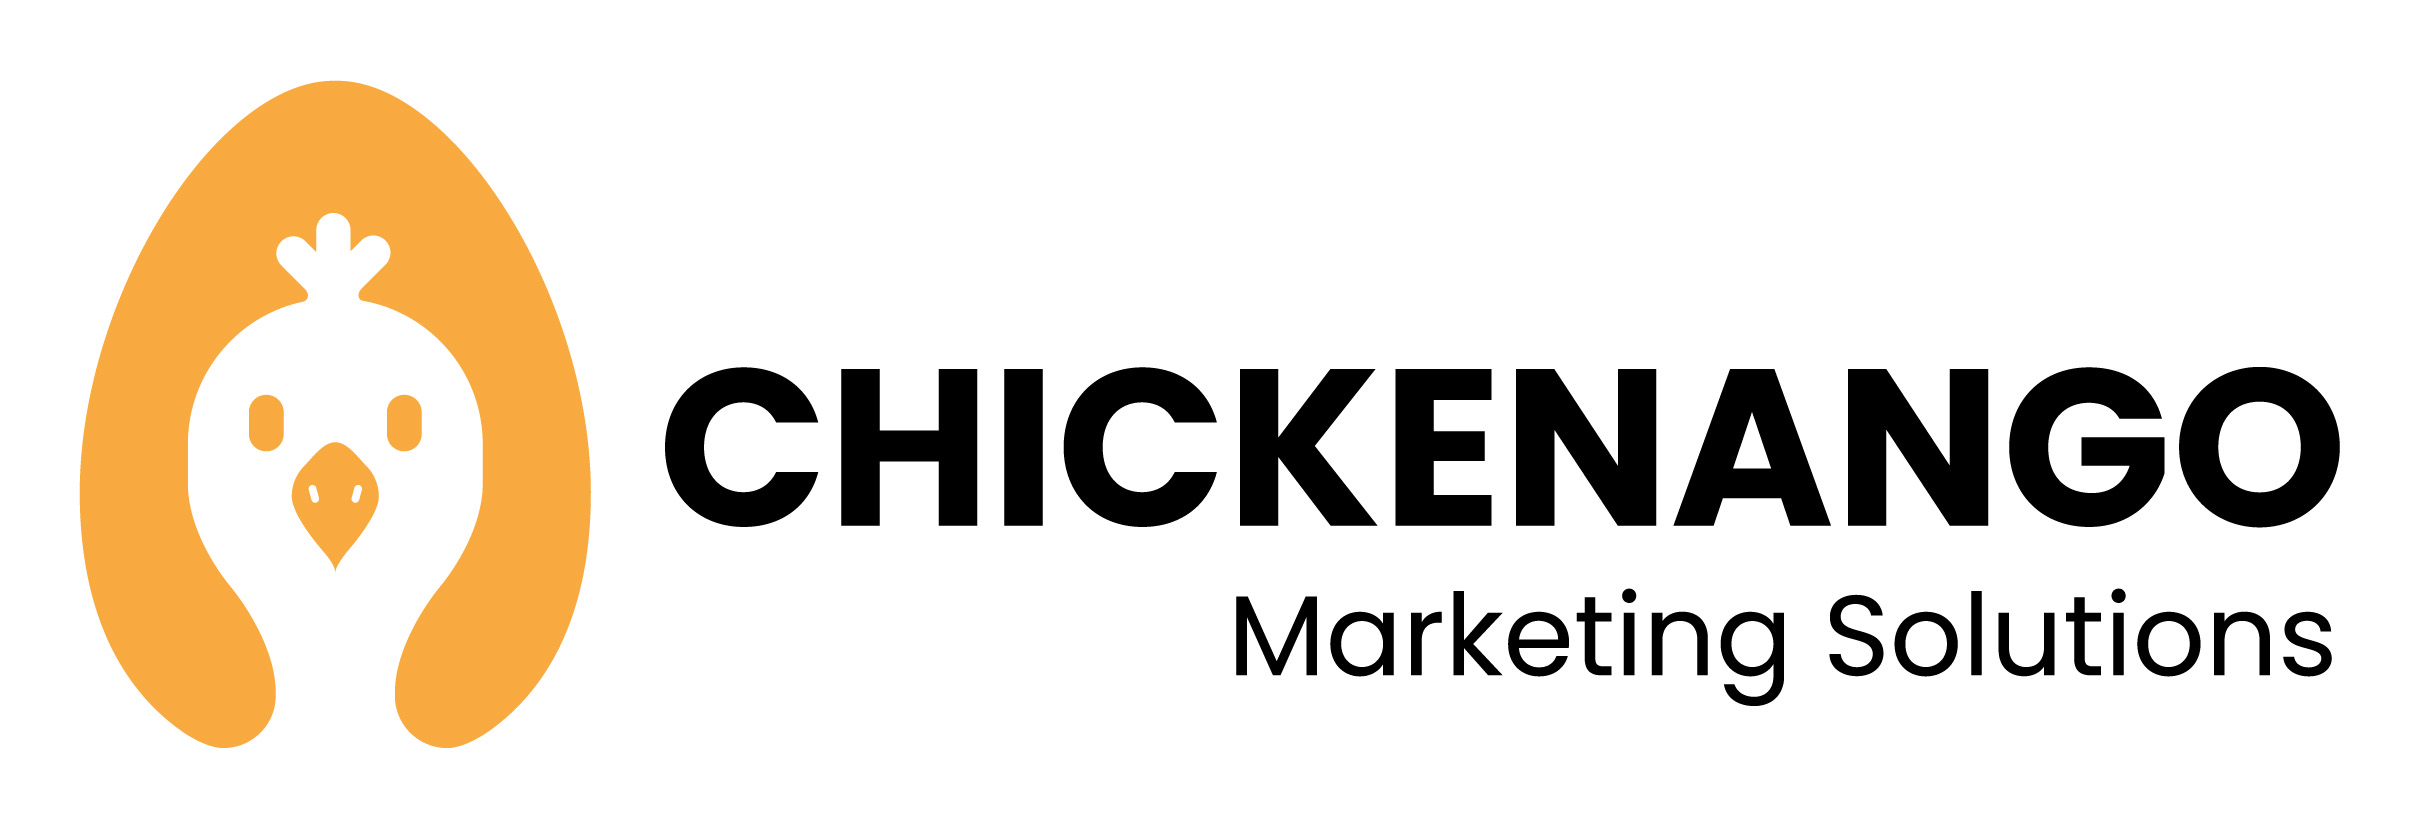 Chickenango.jpg detail image